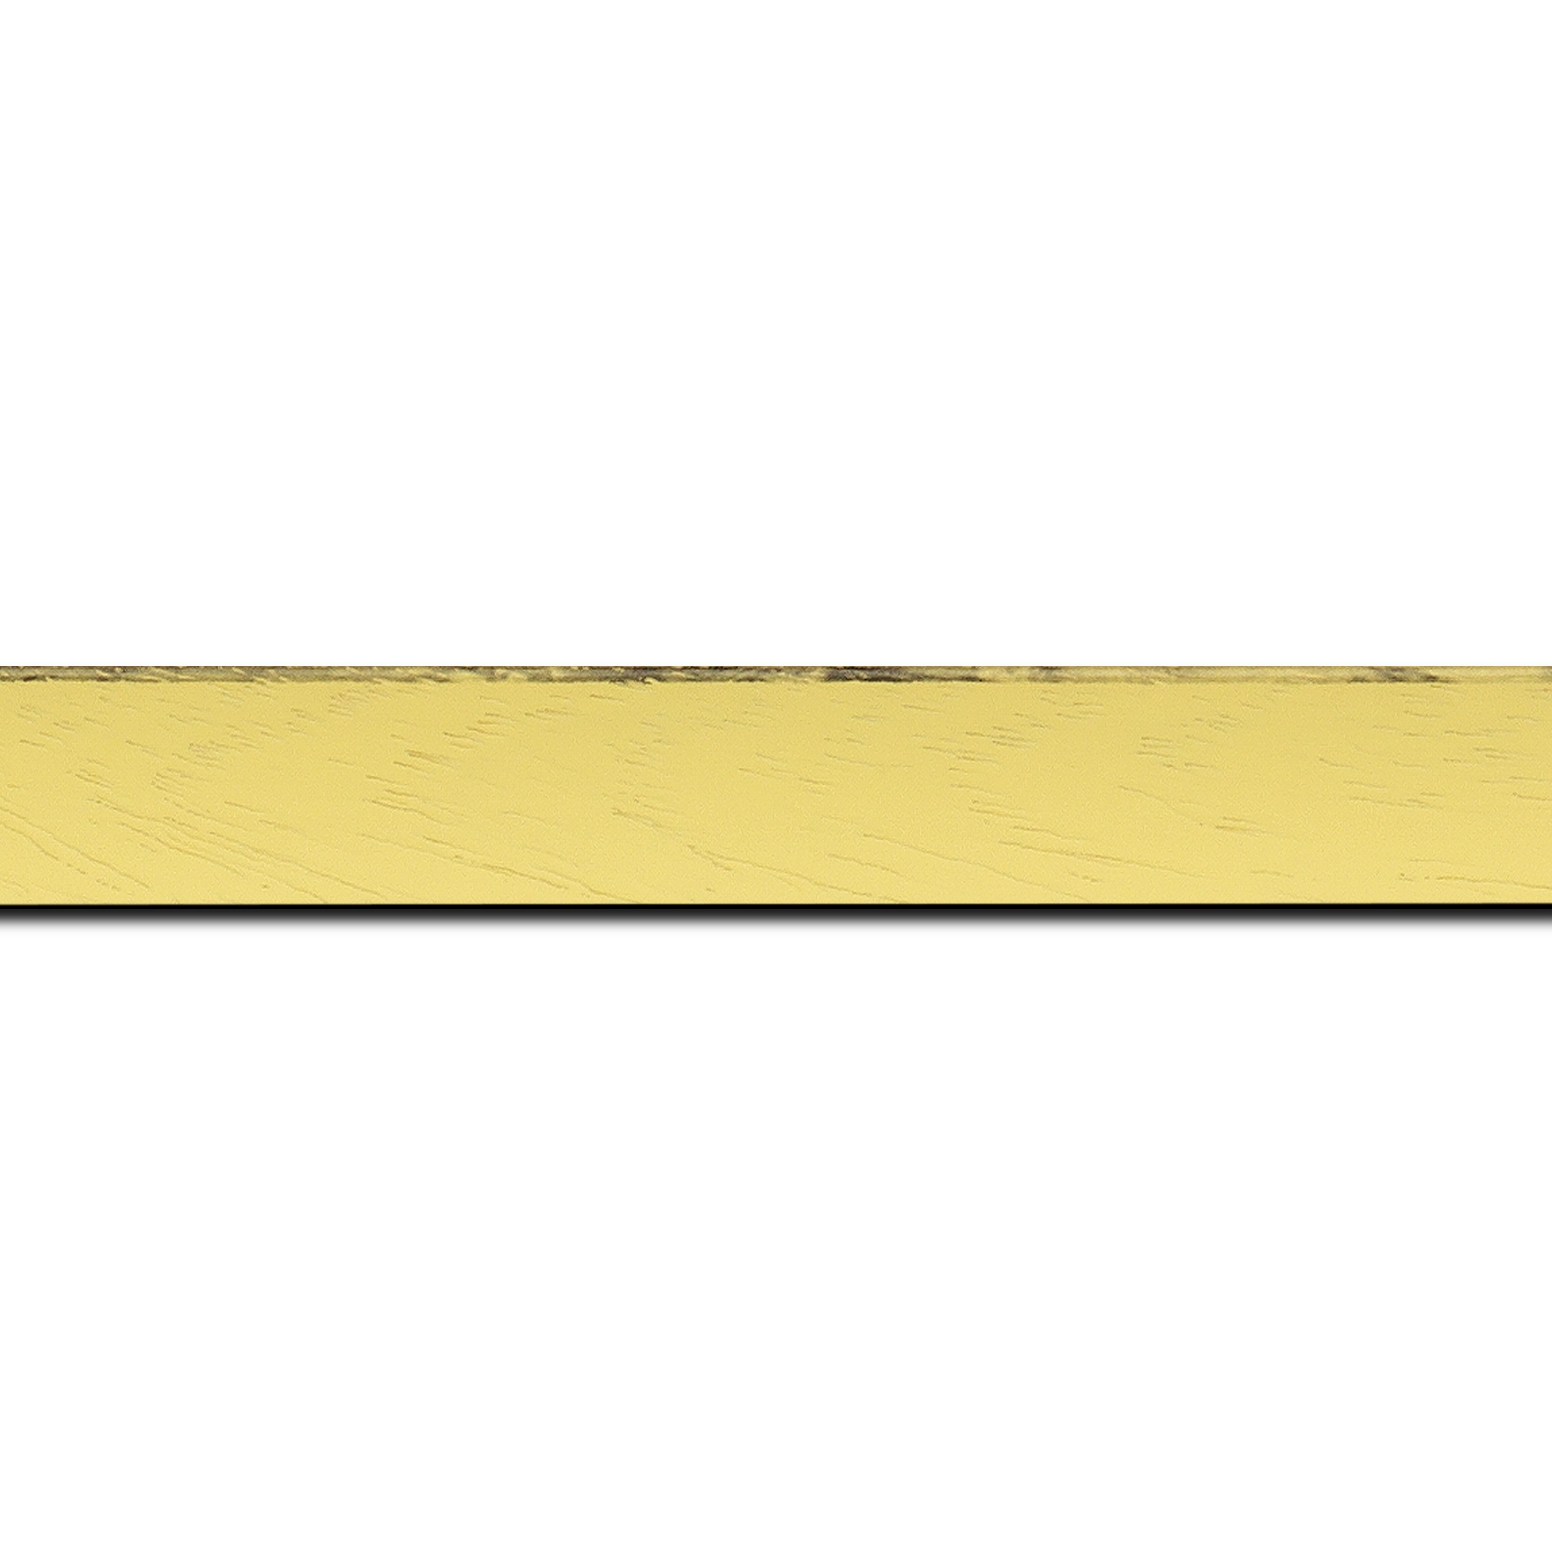 Baguette longueur 1.40m bois profil concave largeur 2.4cm couleur jaune tonique satiné arêtes essuyés noircies de chaque coté